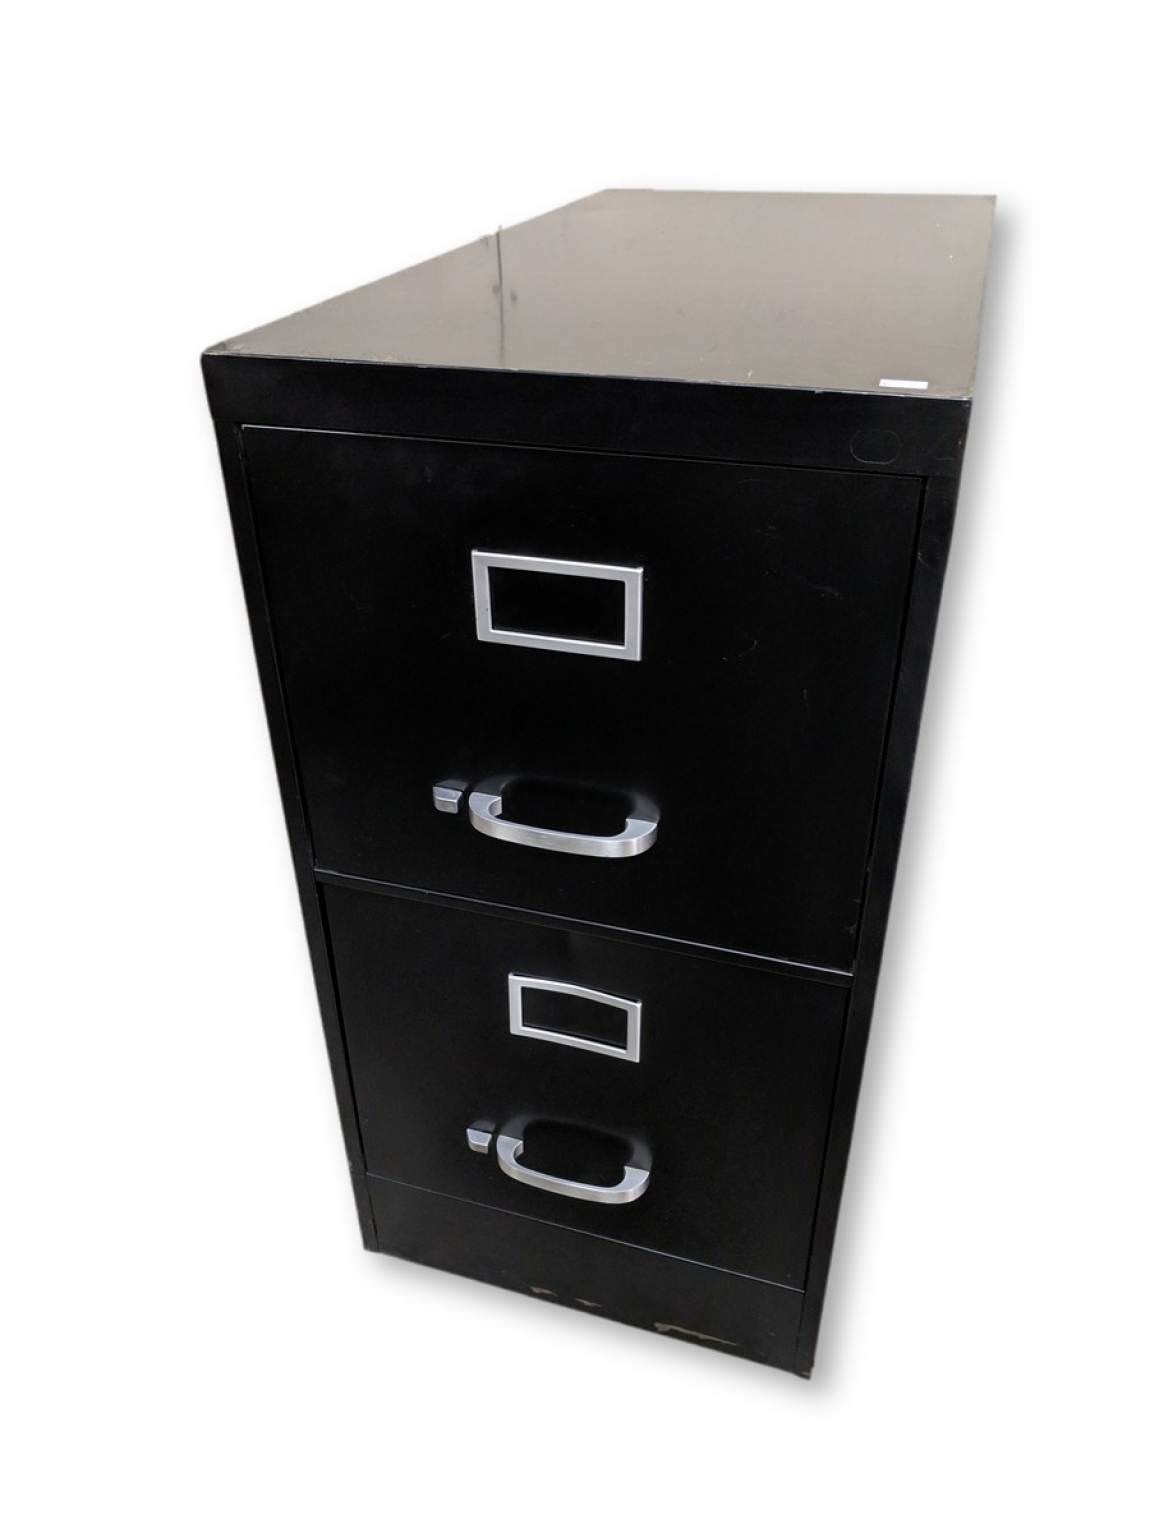 Black Hon 2 Drawer Vertical File Cabinet - 15x28.5